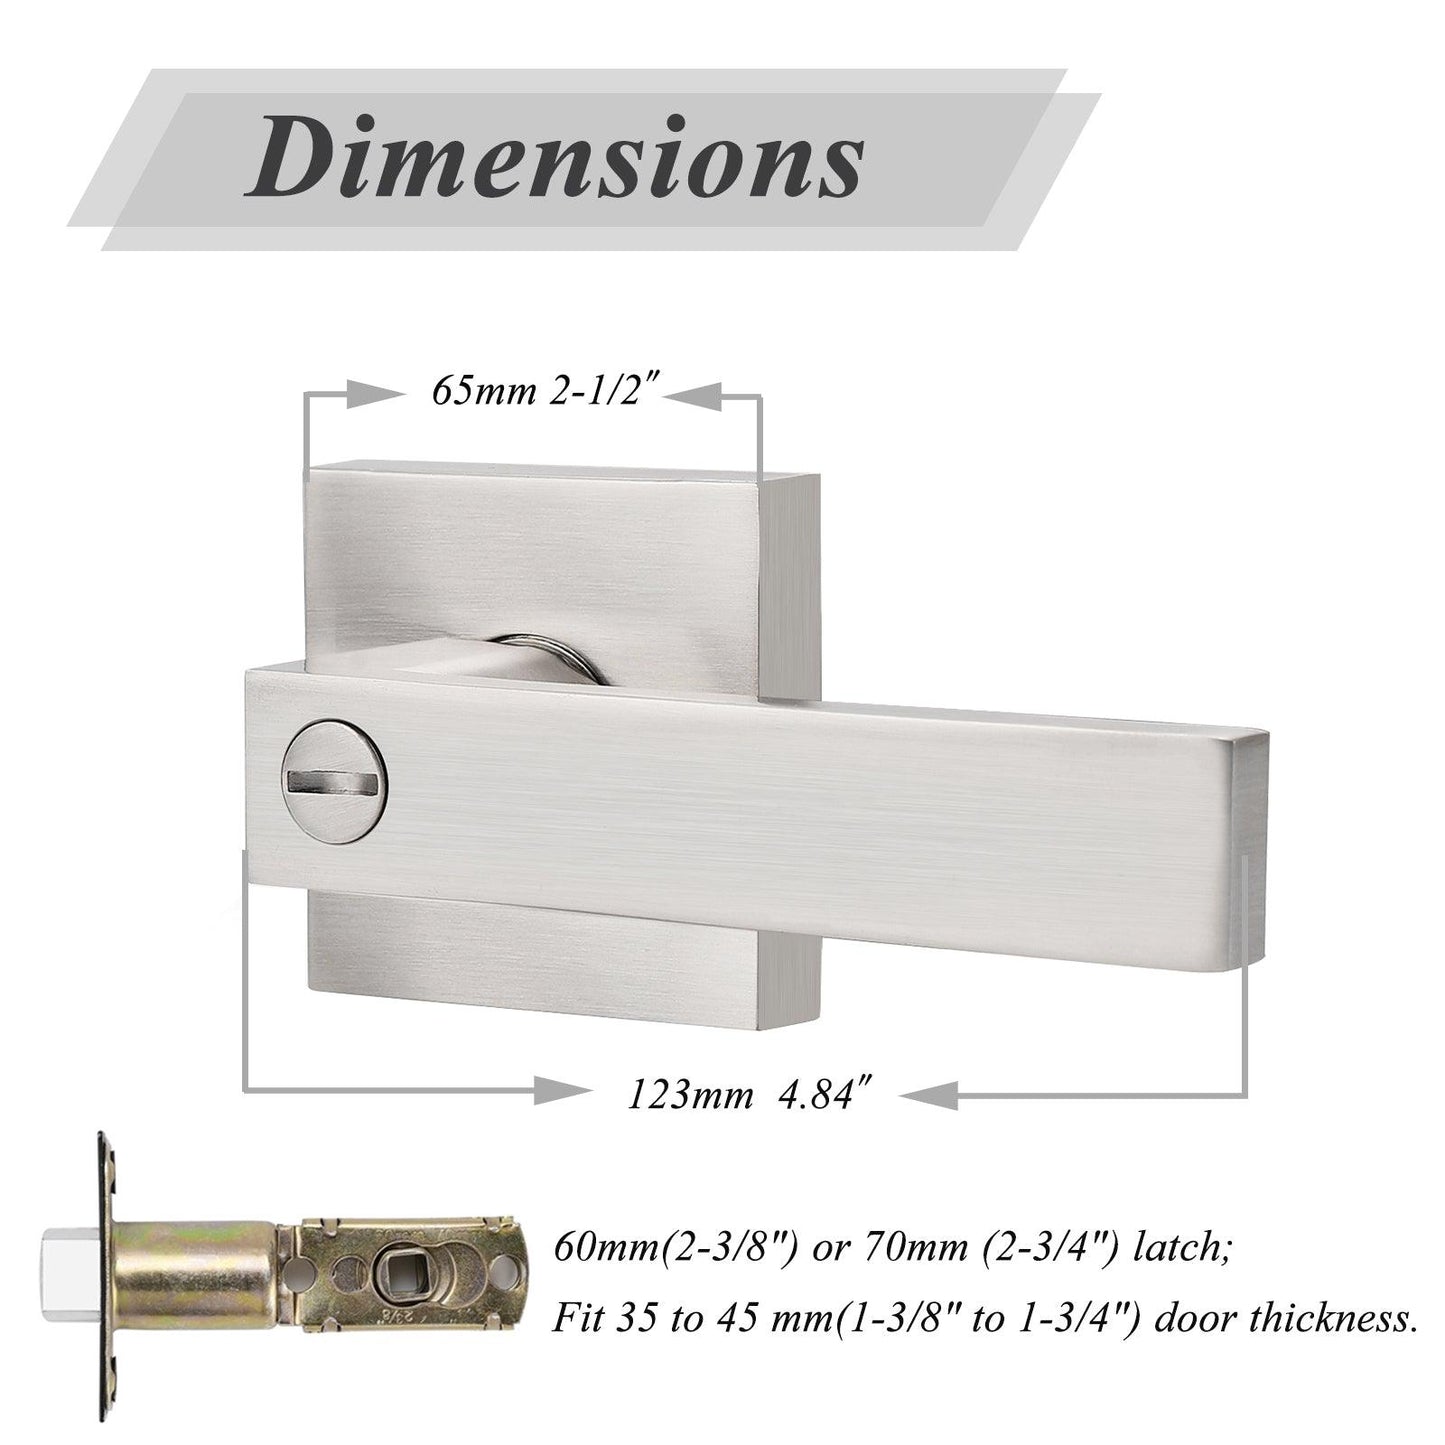 Heavy Duty Door Levers Satin Nickel Finish Privacy Door Handle Locks for Bedroom Bathroom DL01SNBK - Probrico